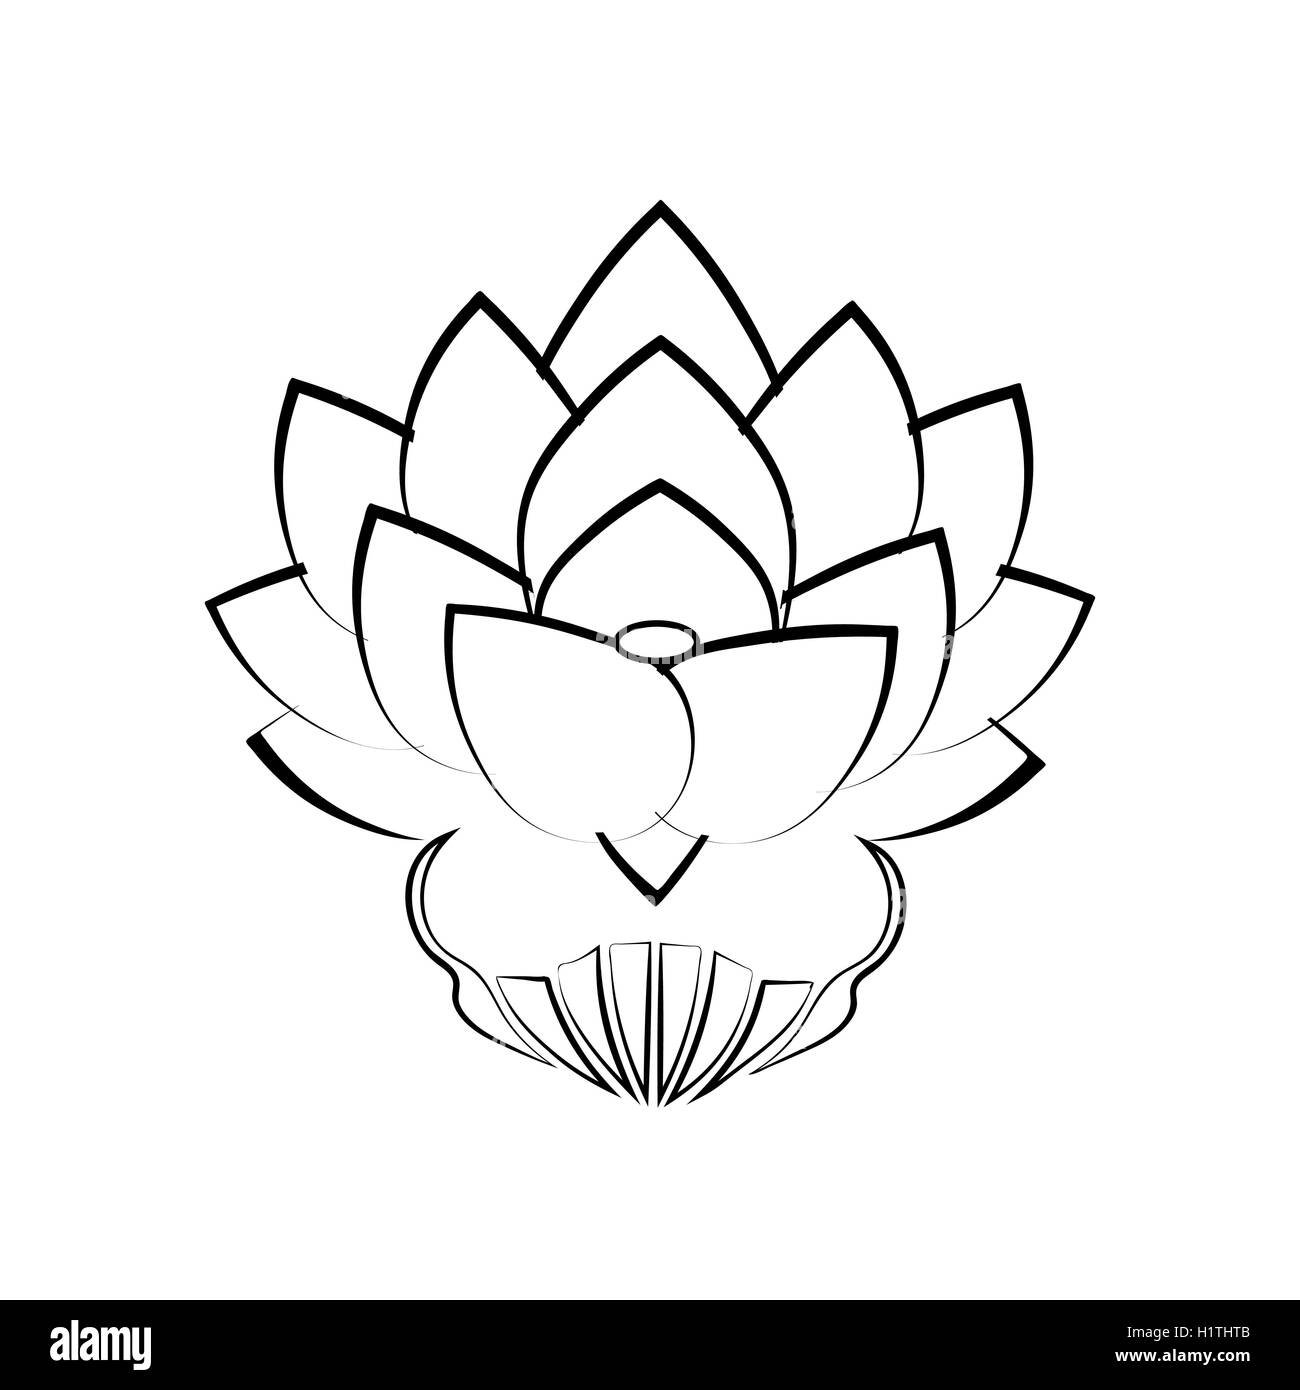 Nero Immagine Stilizzata Di Un Fiore Di Loto Su Uno Sfondo